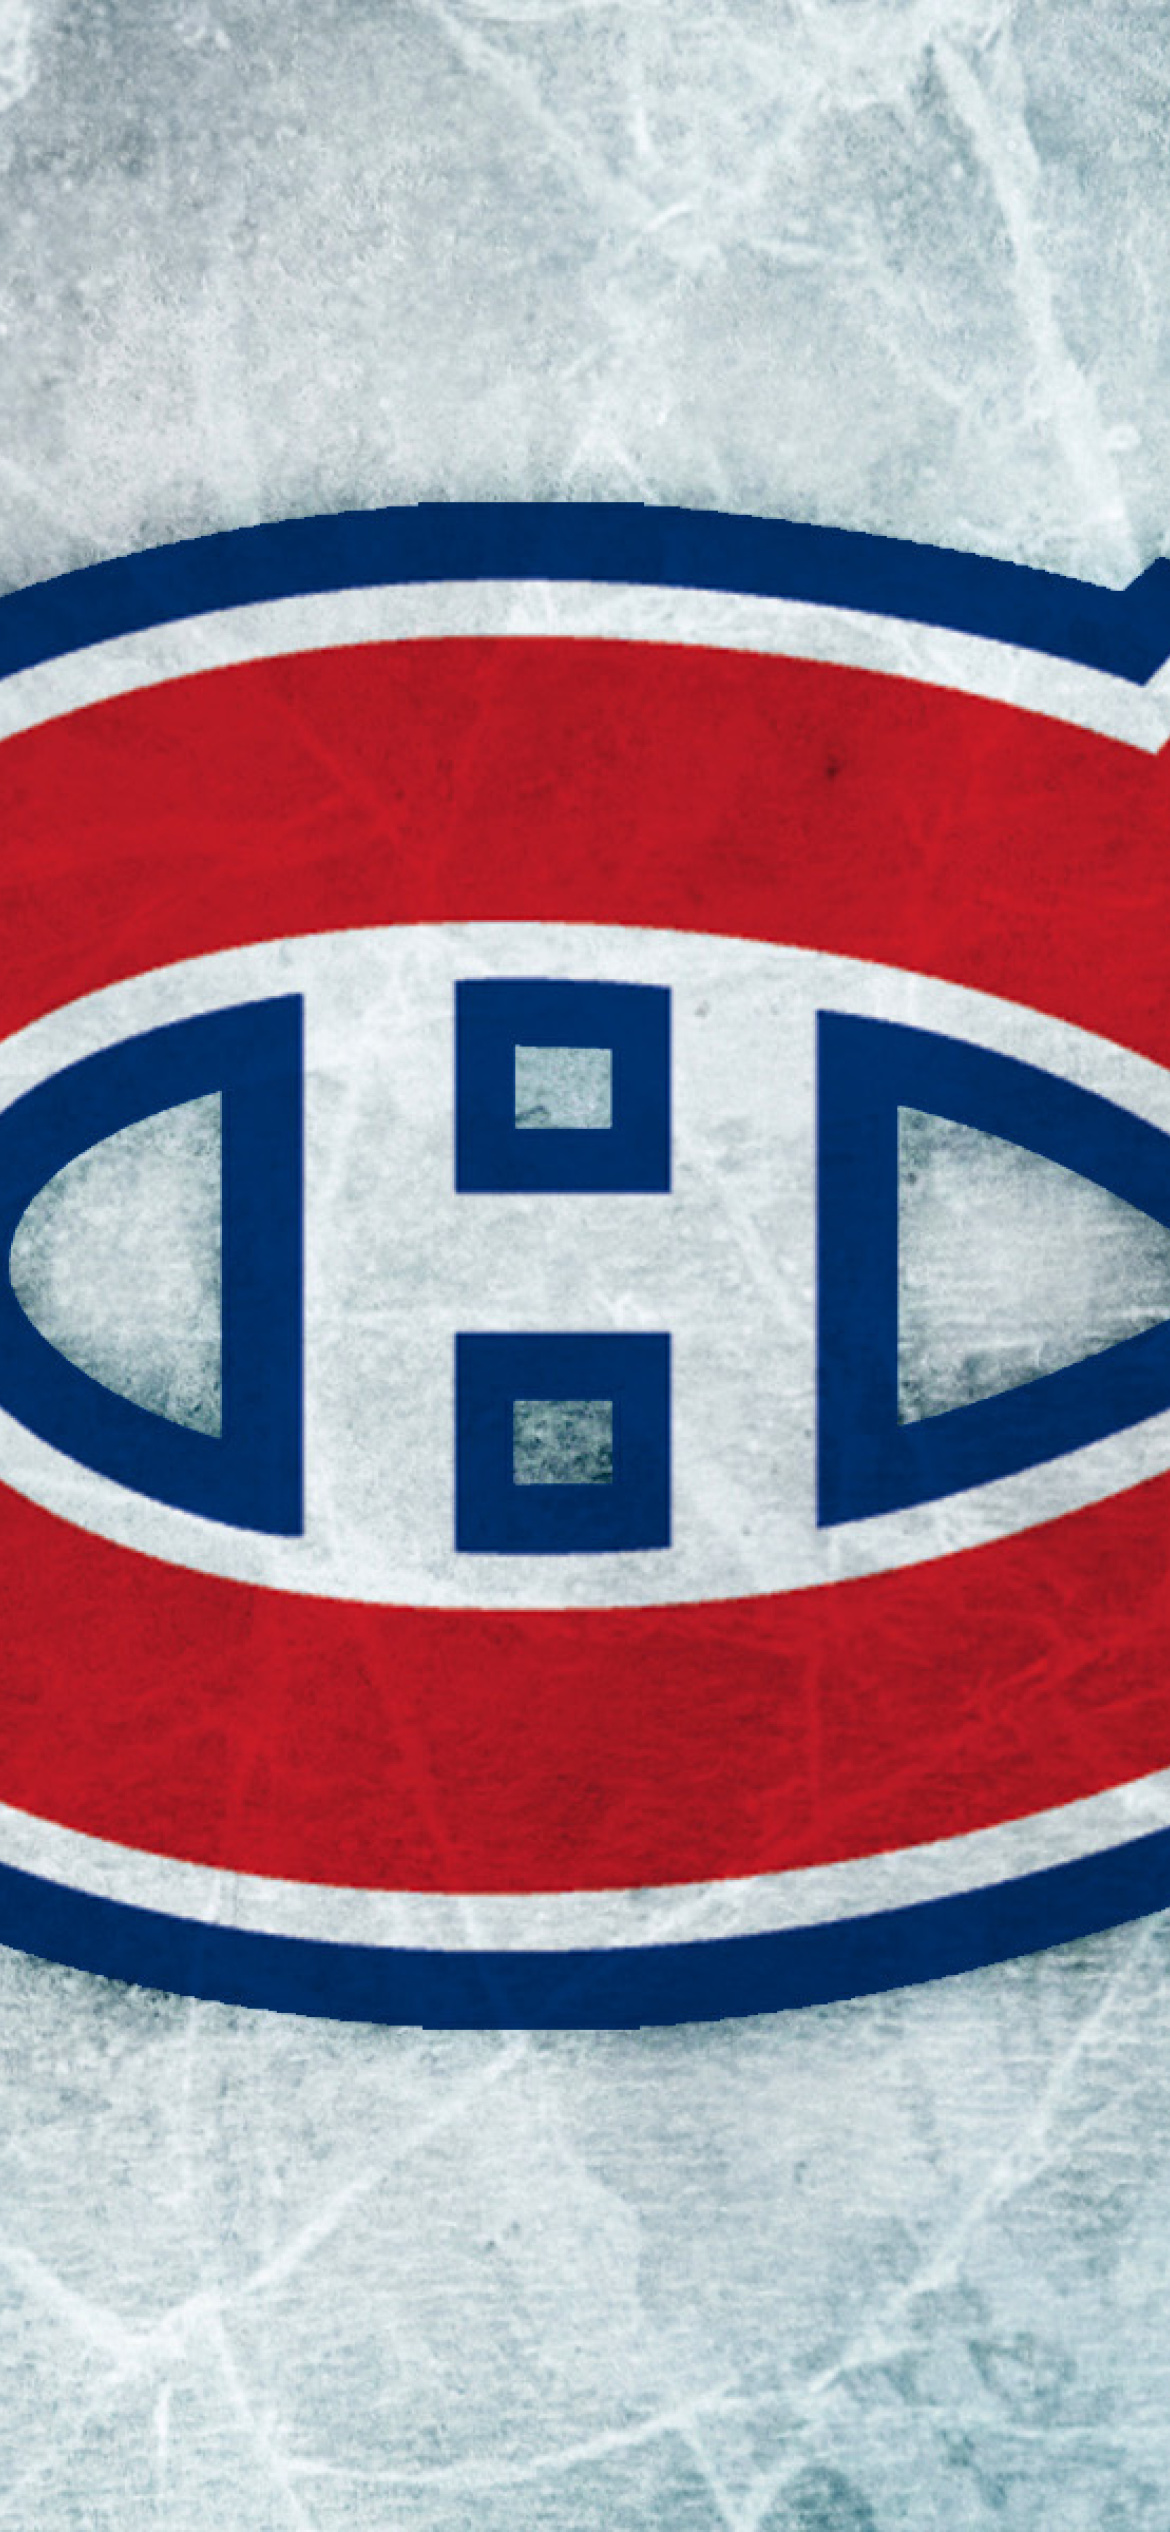 Fondo de pantalla Montreal Canadiens 1170x2532